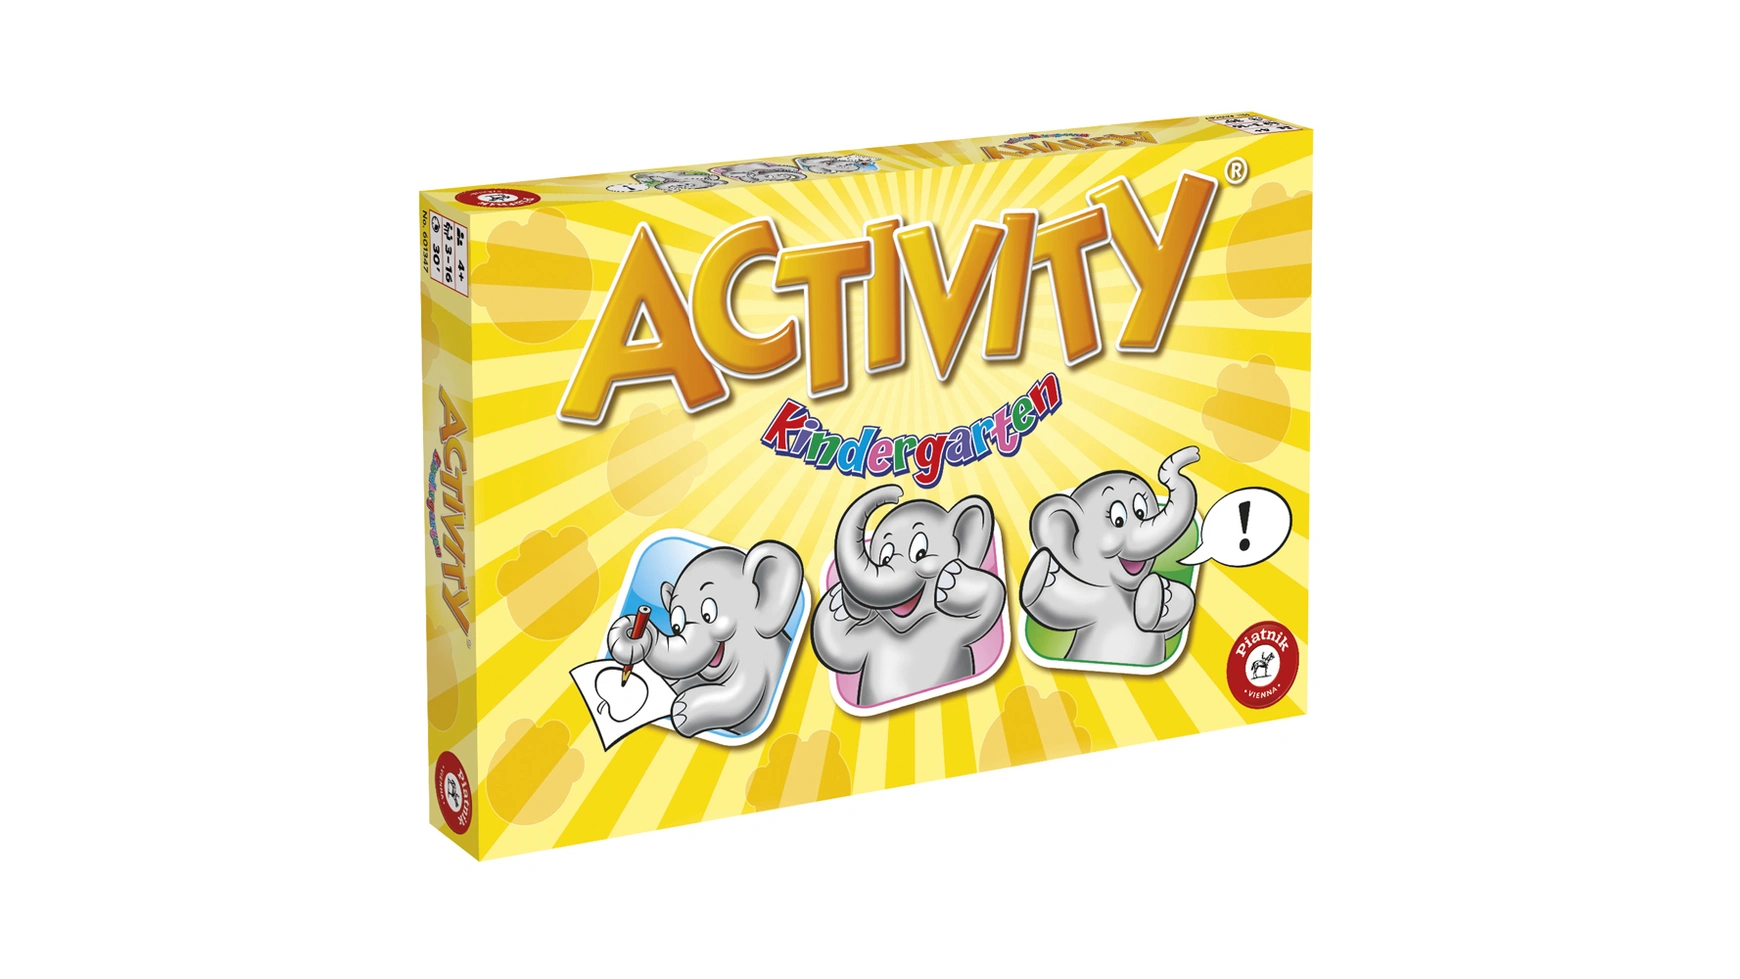 Activity kindergarten activity развлечения для самых маленьких